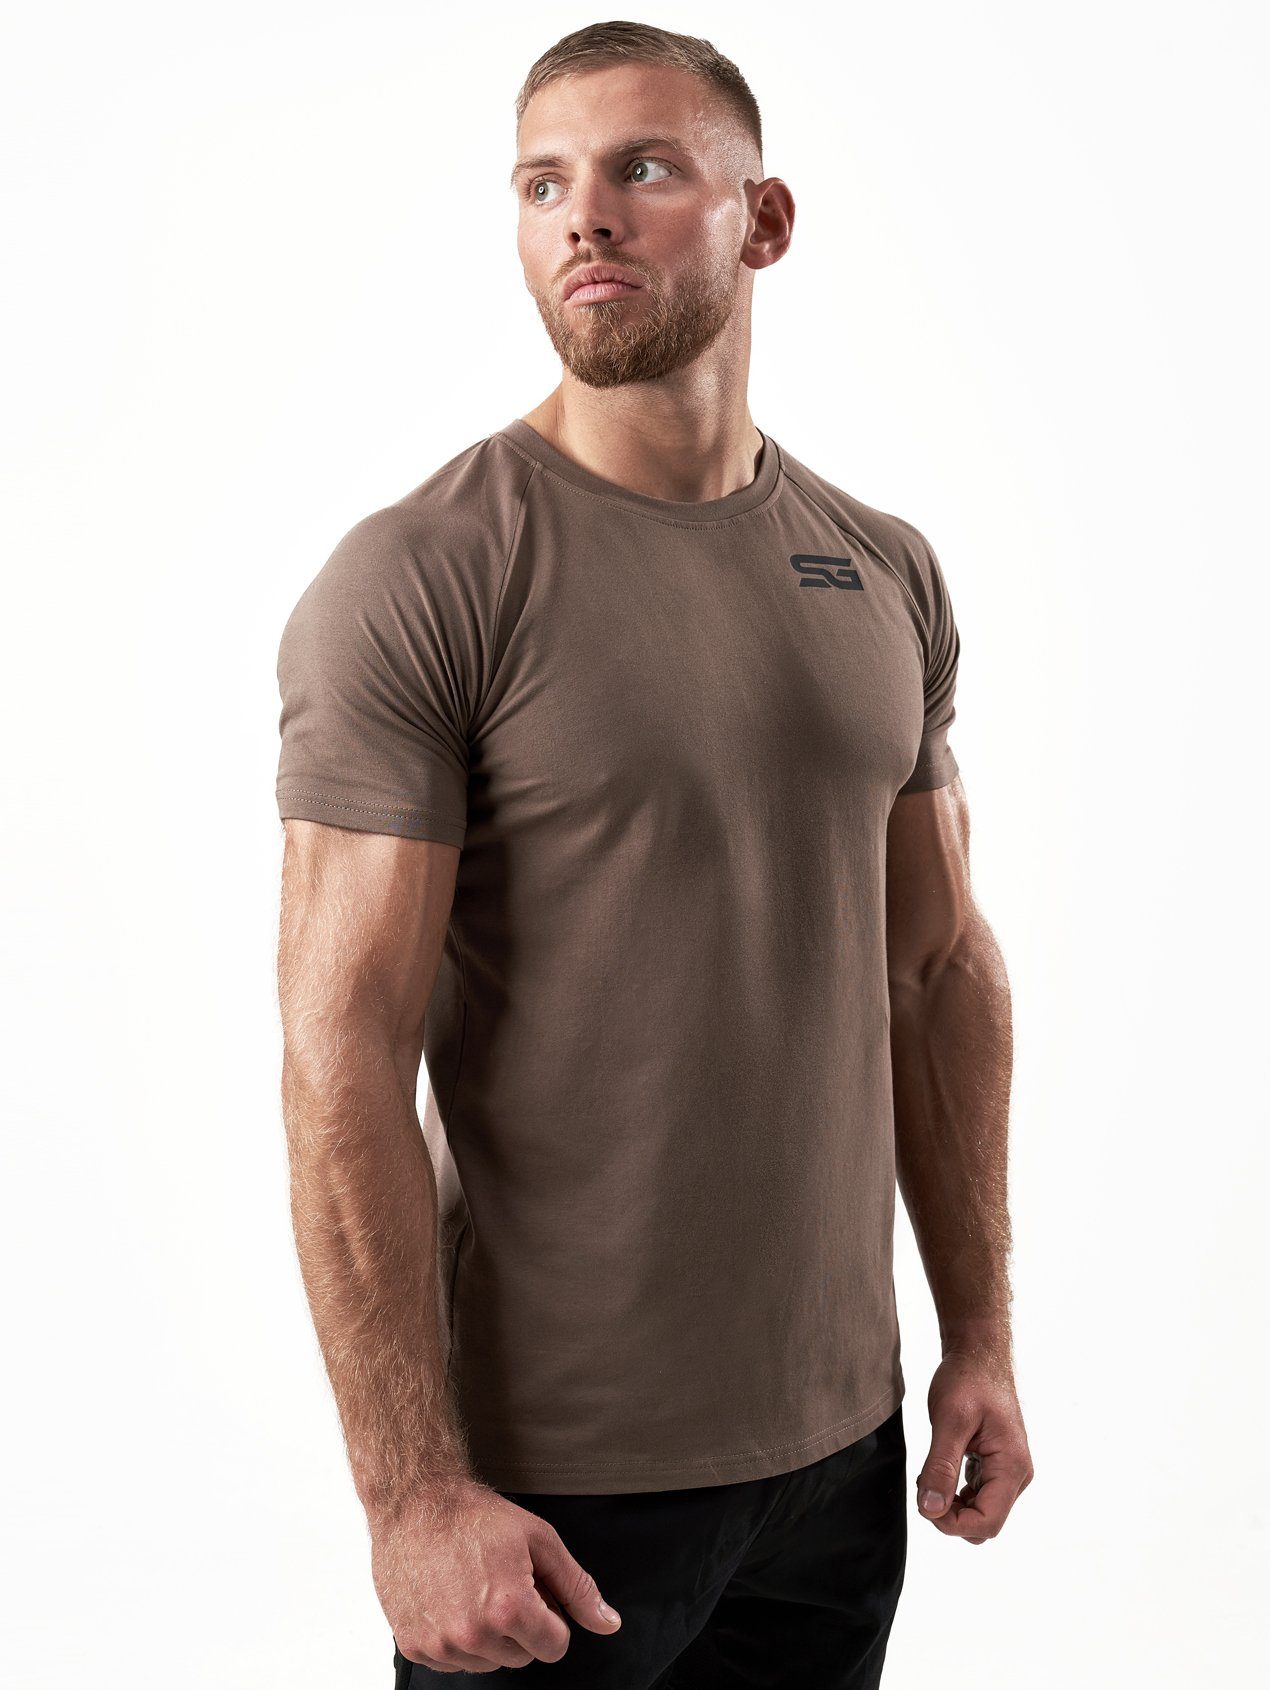 SATIRE GYM® Trainingsshirt Fitness T-Shirt aus Baumwolle Slim Fit T-Shirt  mit Print oder Patch